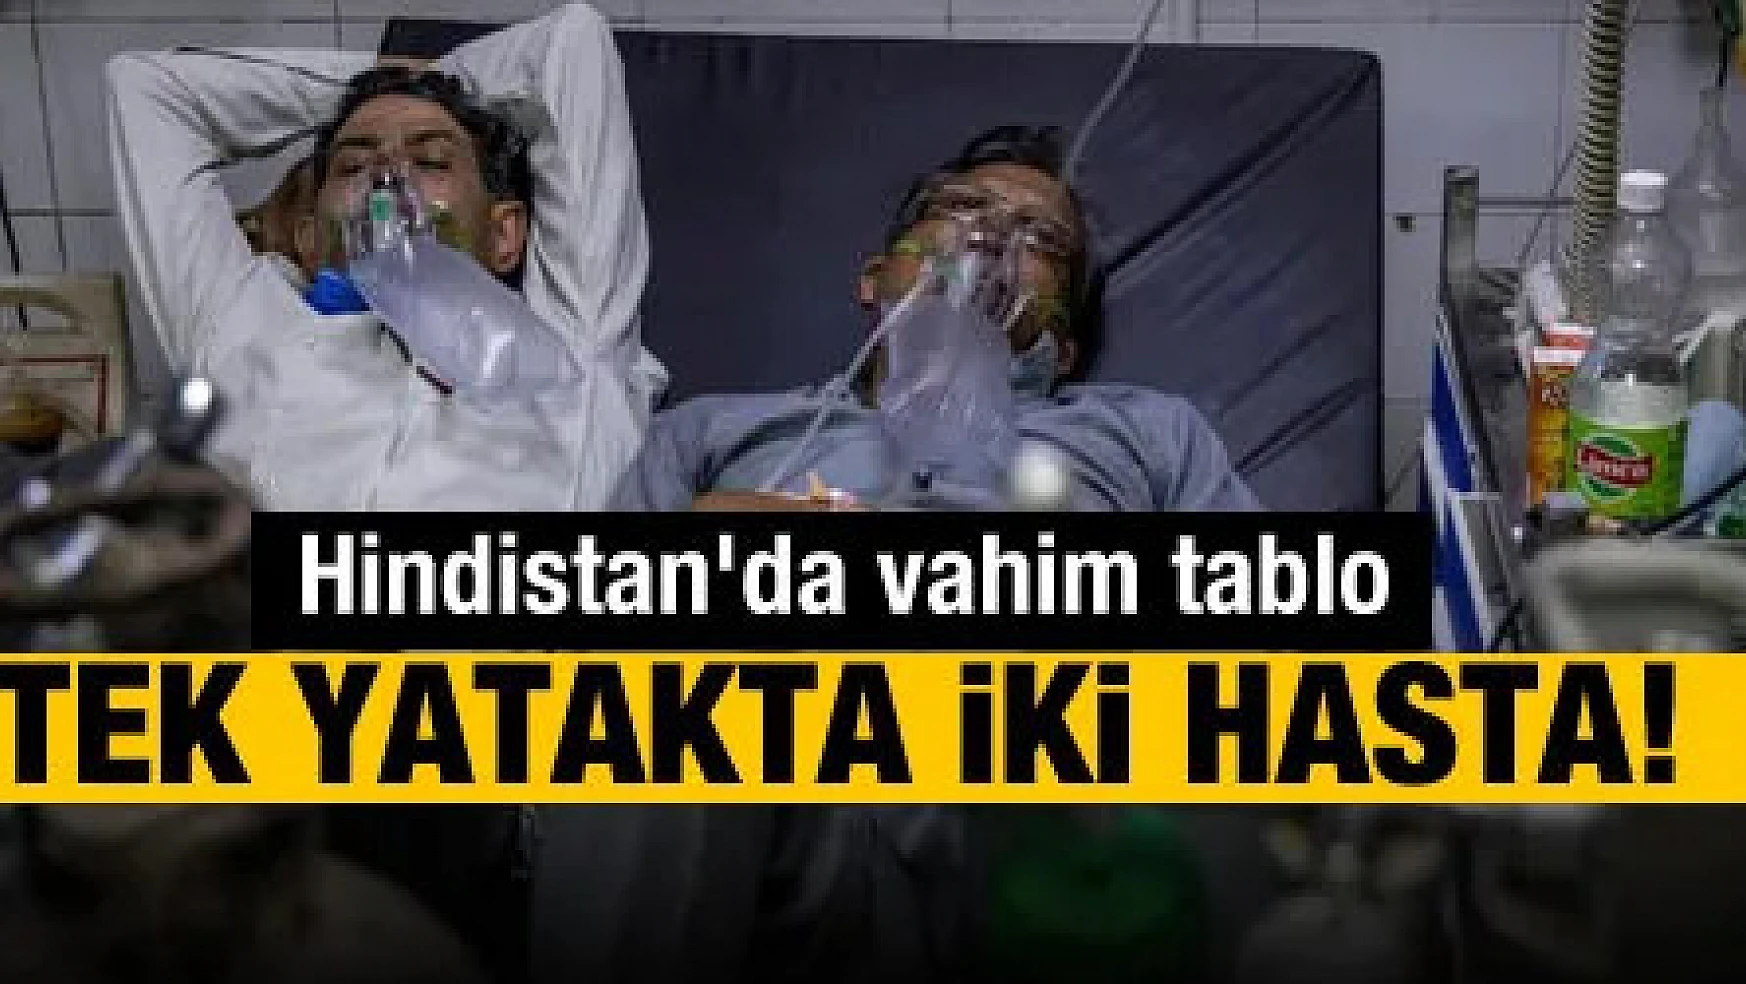 Hindistan'da vahim tablo: Tek yatakta iki hasta